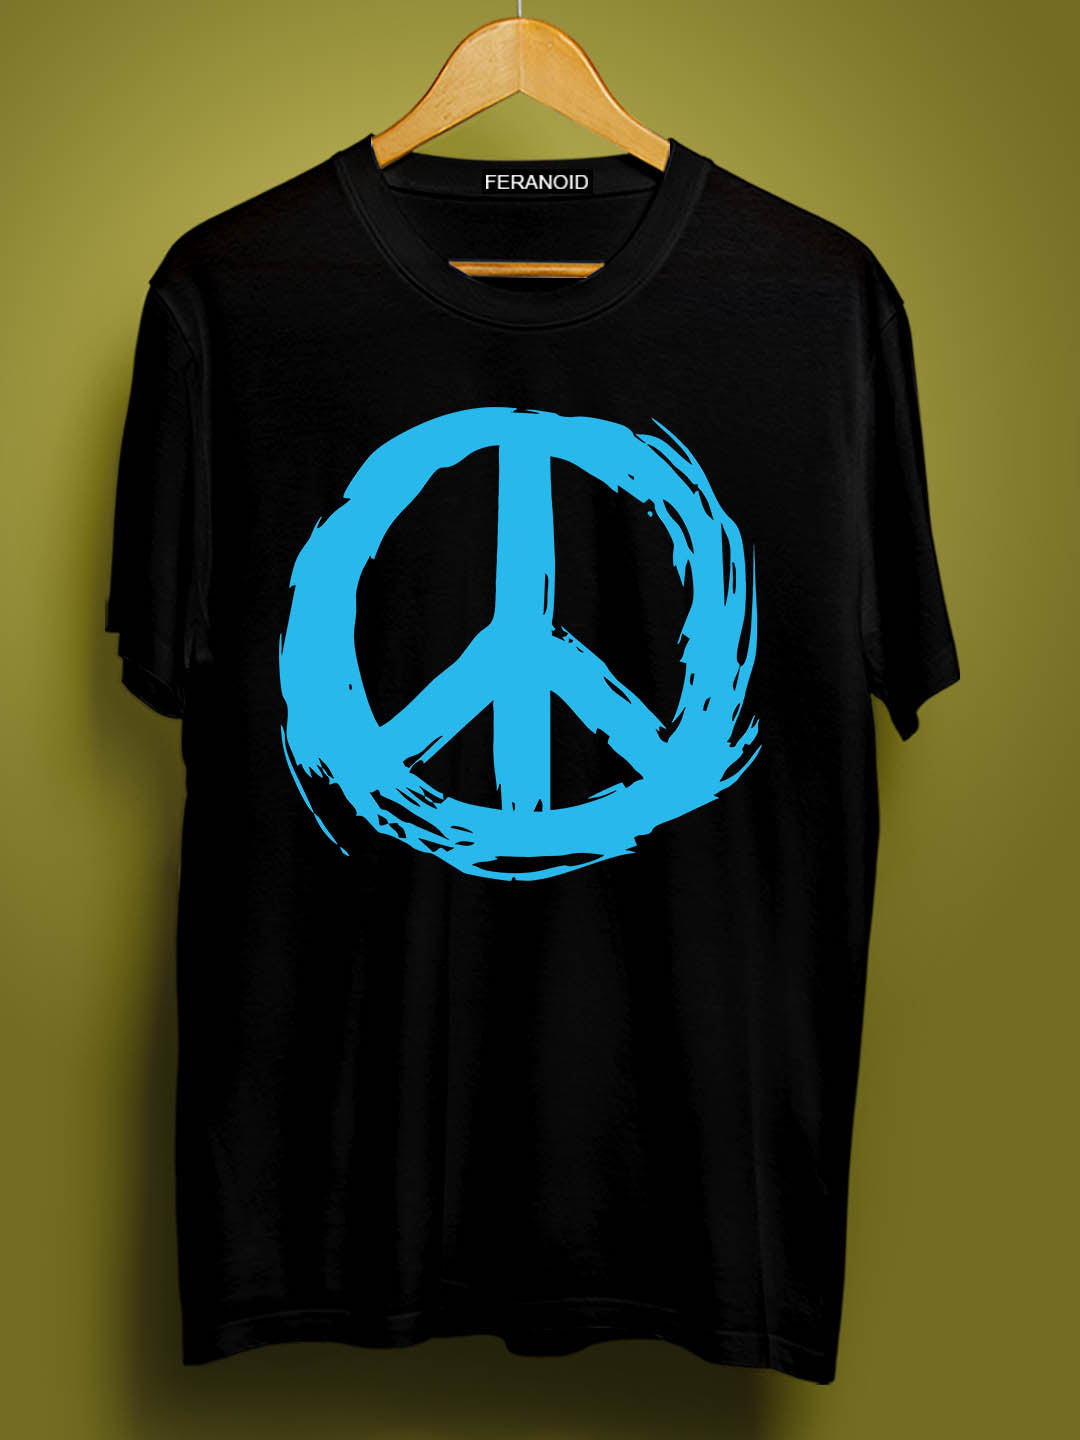 BLUE PEACE BLACK T-SHIRT